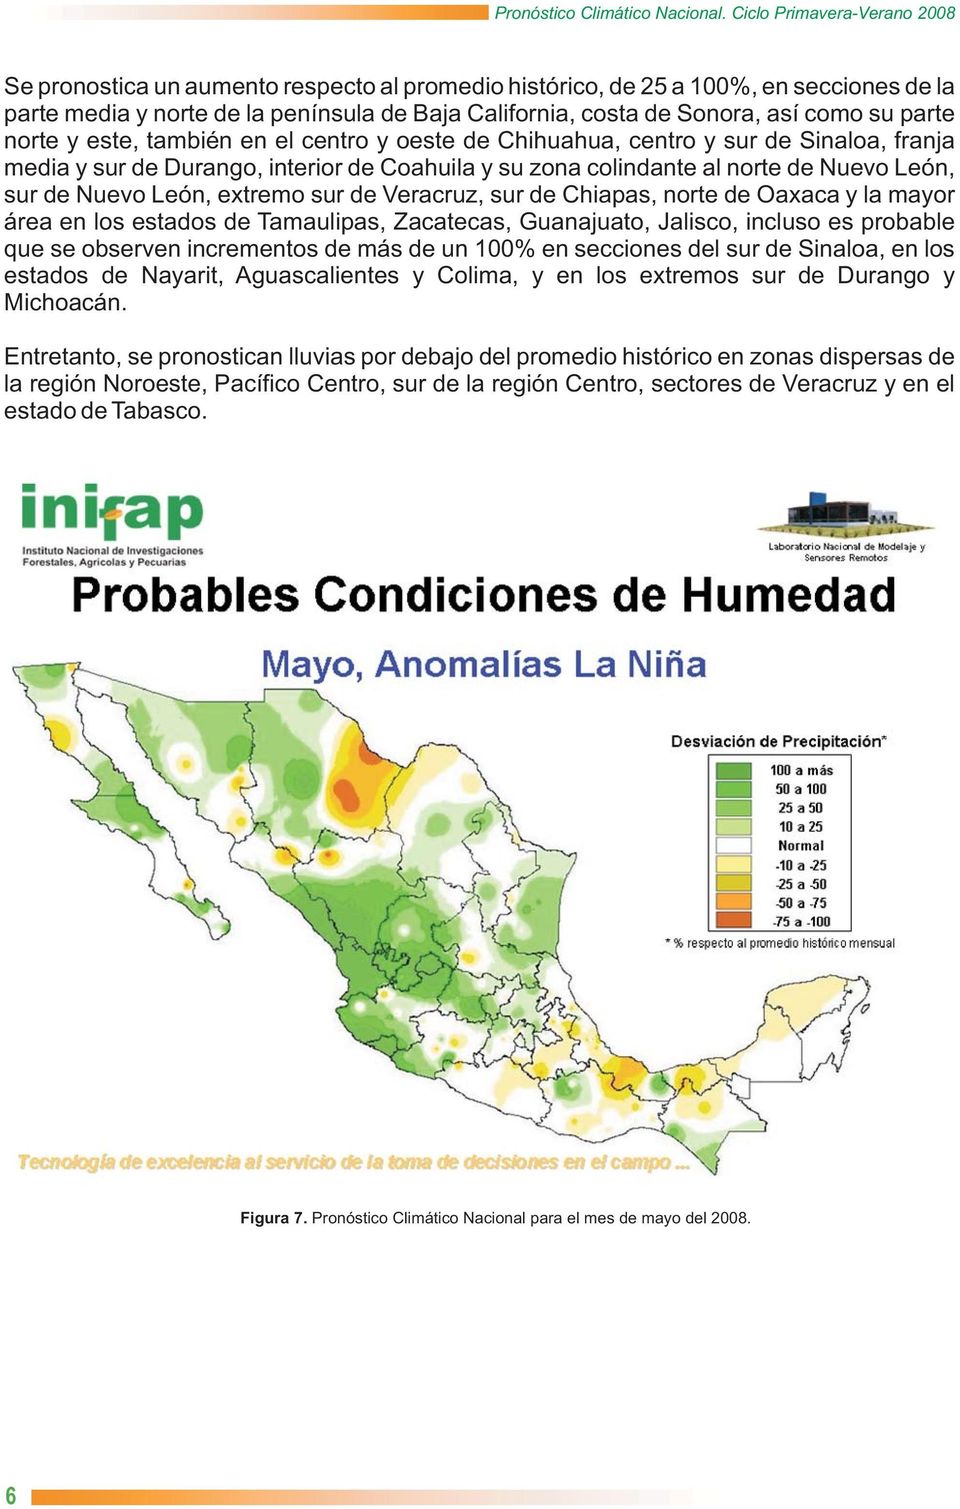 Veracruz, sur de Chiapas, norte de Oaxaca y la mayor área en los estados de Tamaulipas, Zacatecas, Guanajuato, Jalisco, incluso es probable que se observen incrementos de más de un 100% en secciones